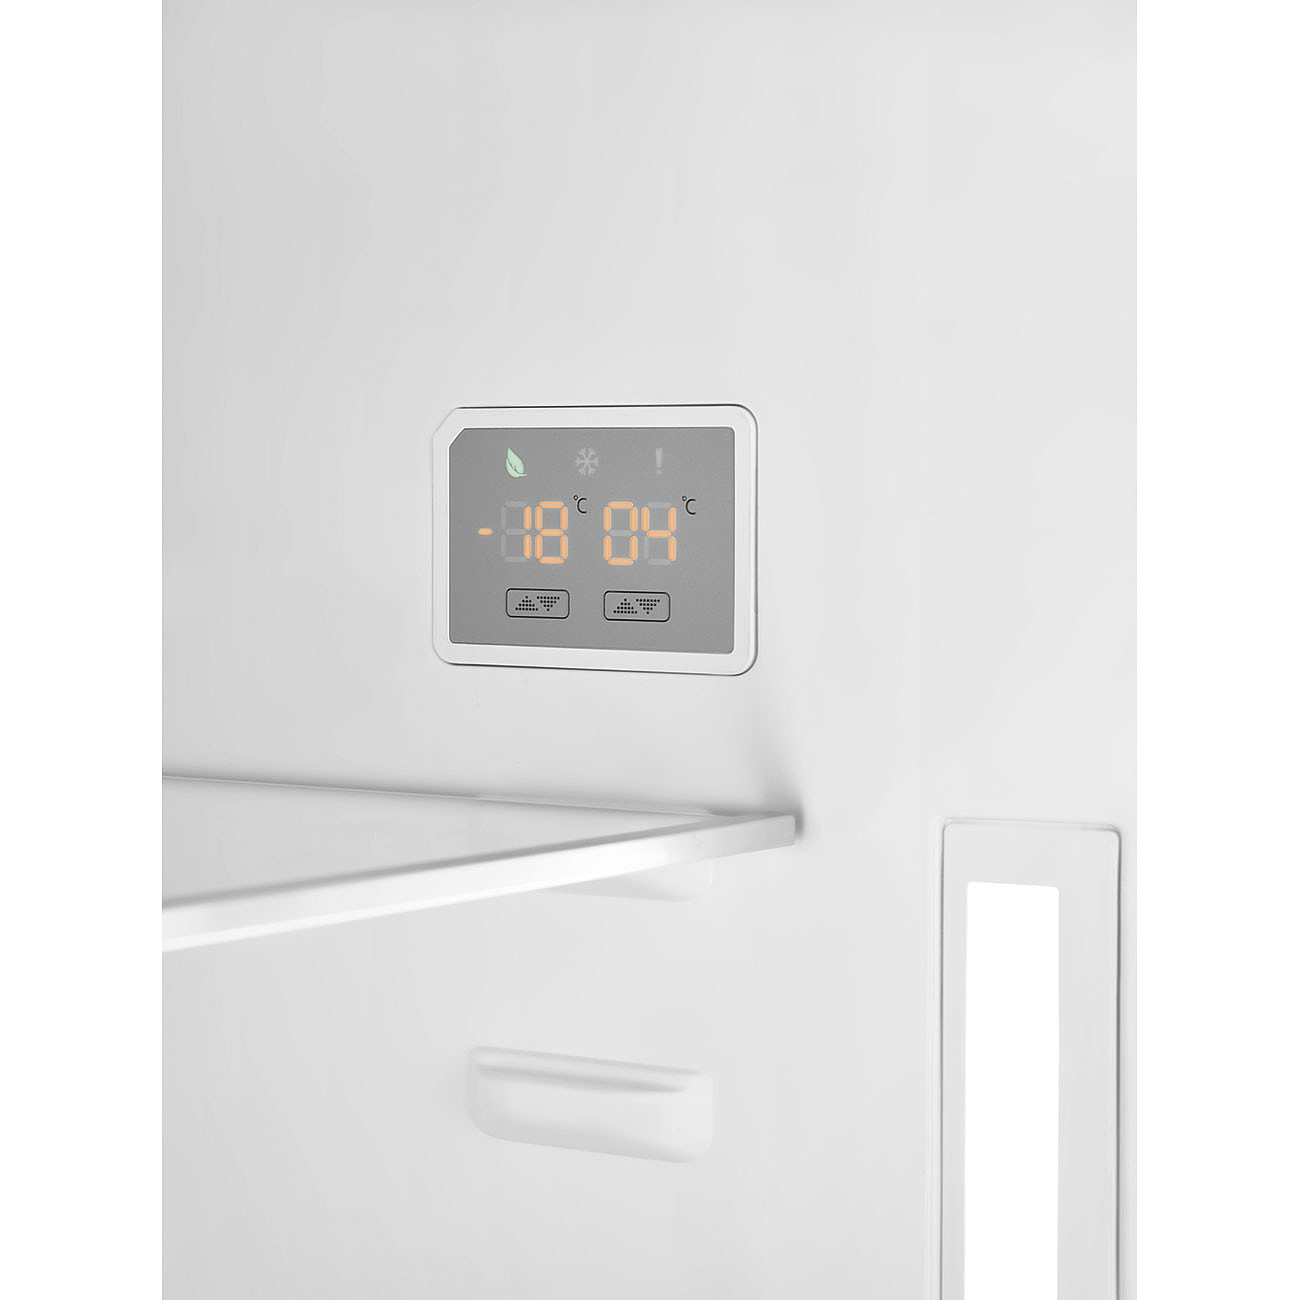 SMEG FA8005RAO5 Отдельностоящий холодильник, 70 см, антрацит, фурнитура латунная, петли справа